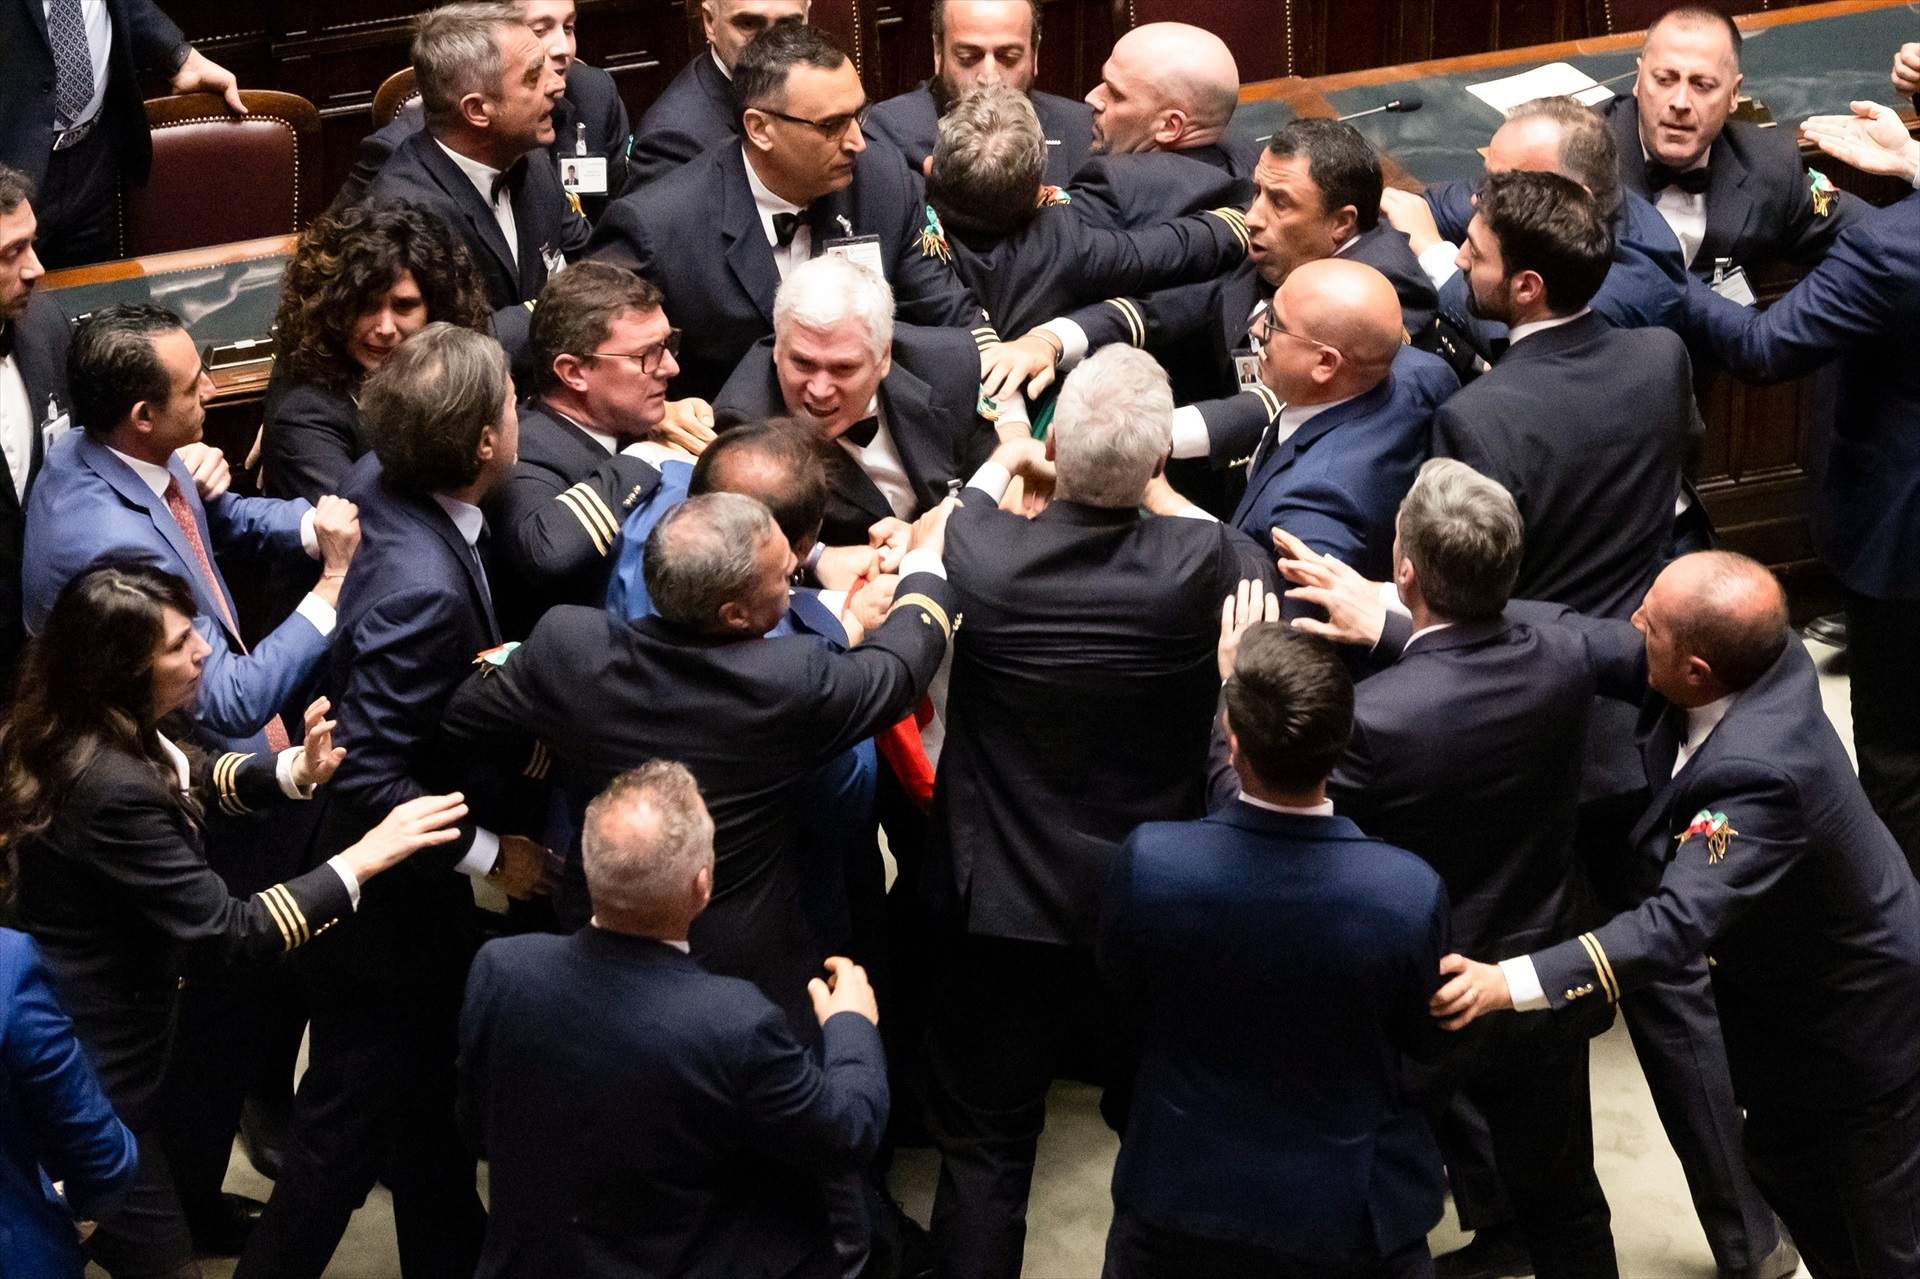 Pelea en el Parlamento italiano: representantes de la extrema derecha agreden a puñetazos a un diputado